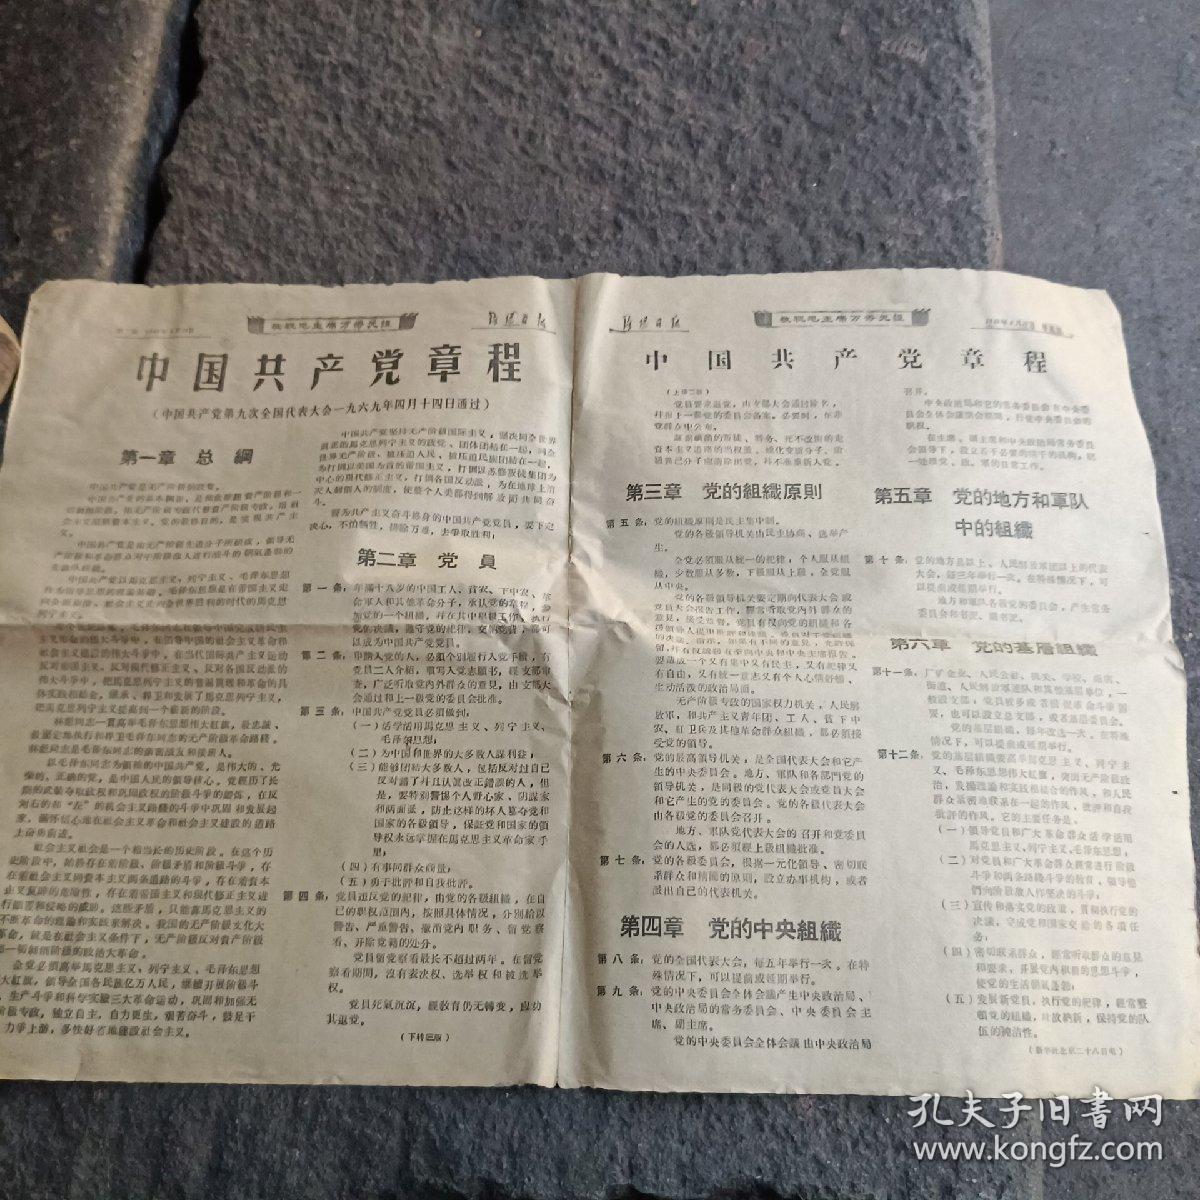 洛阳日报1969.4.29